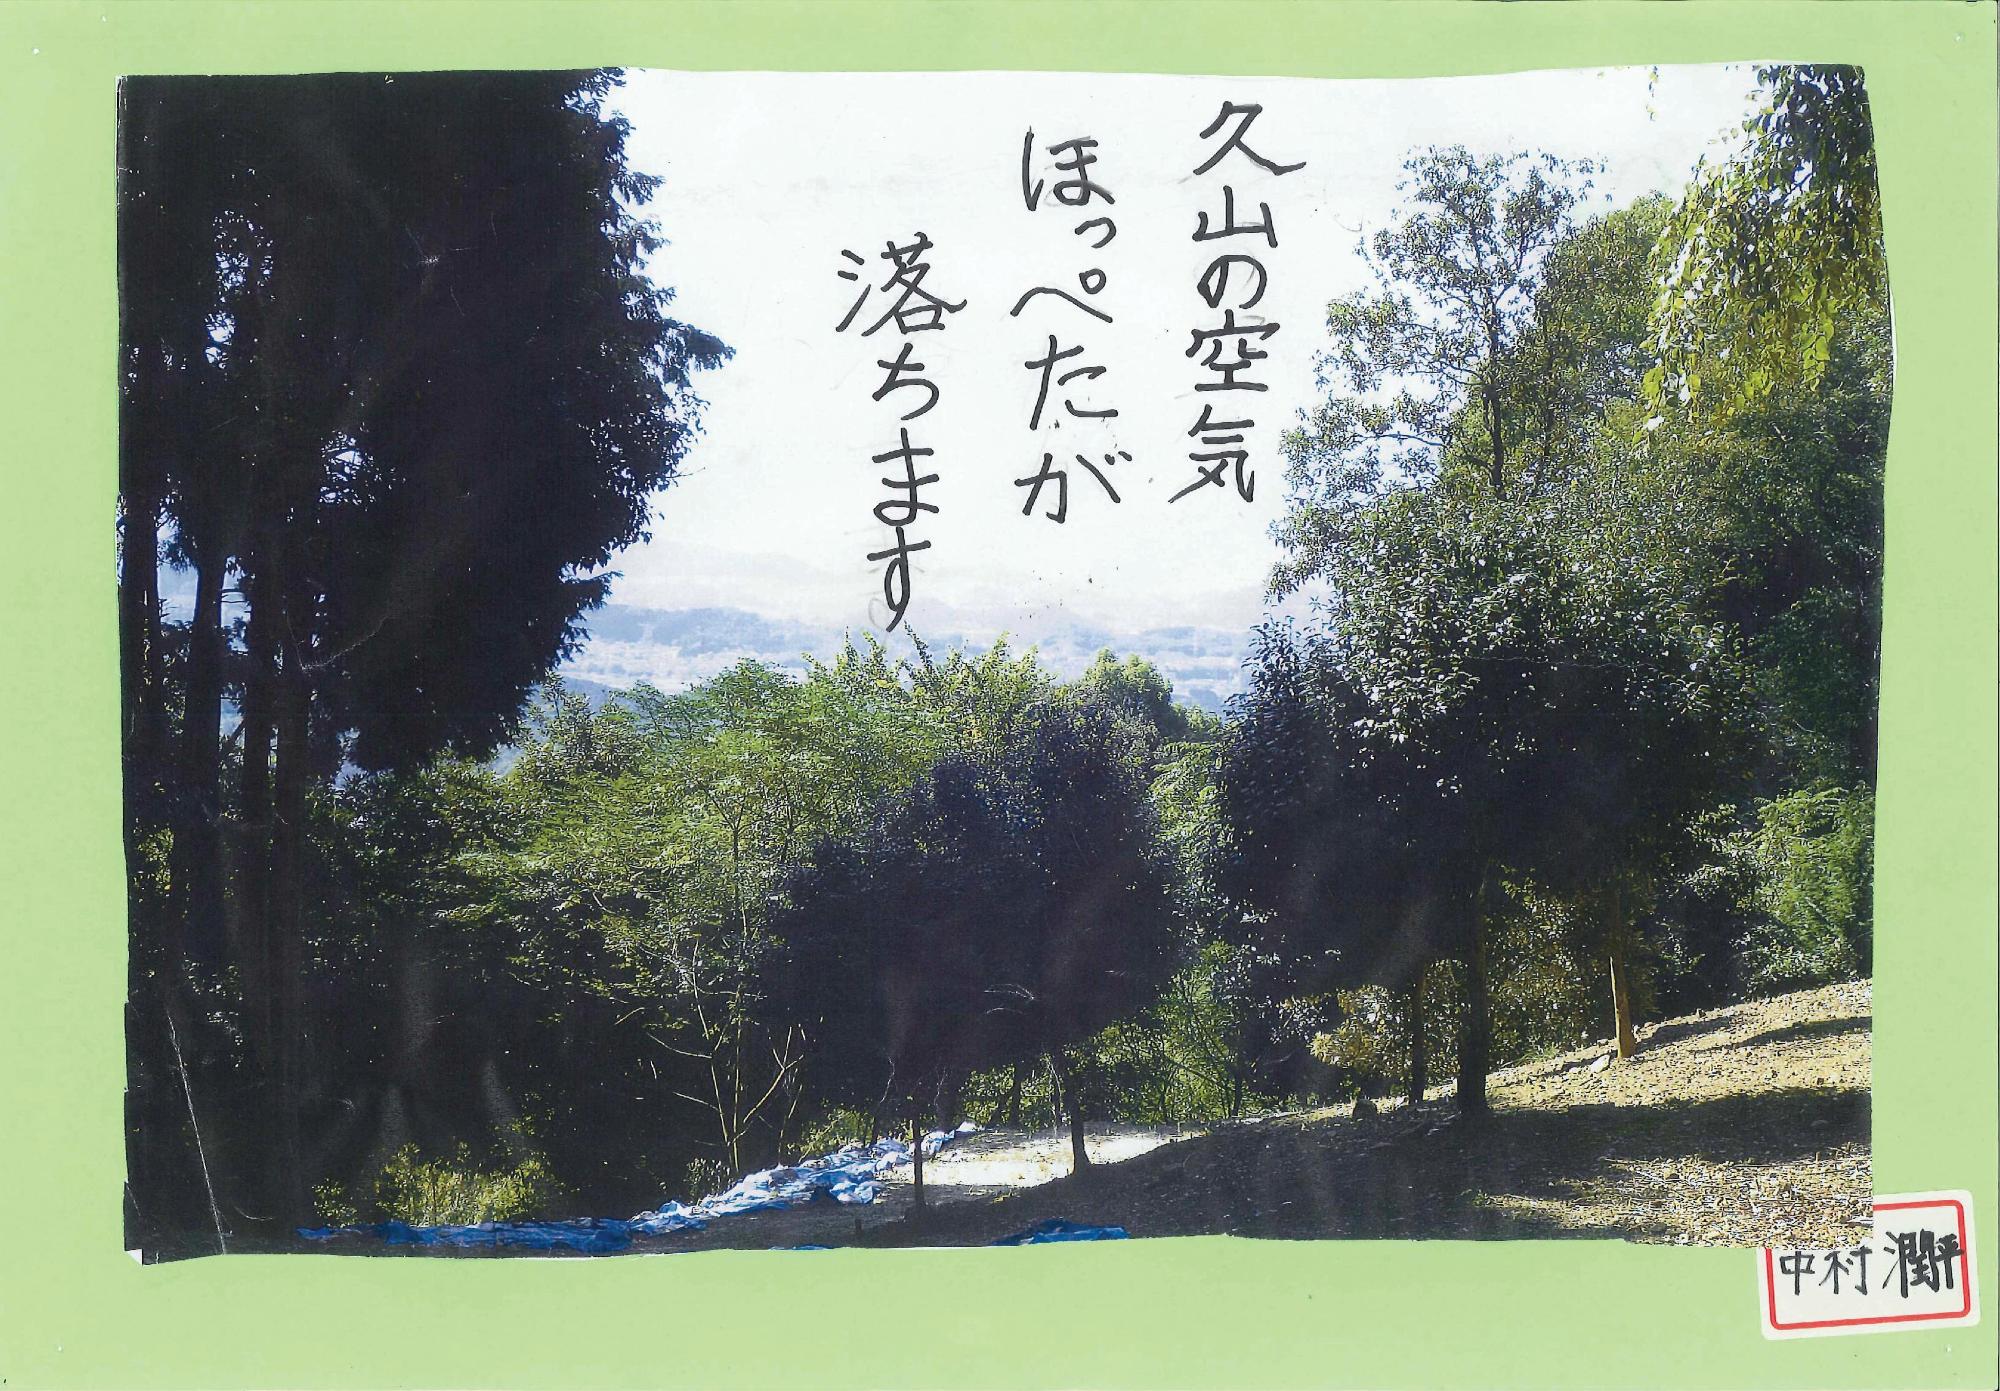 木が生い茂る山の写真に「久山の空気ほっぺたが落ちます」というキャッチコピーが書かれたポスターの写真